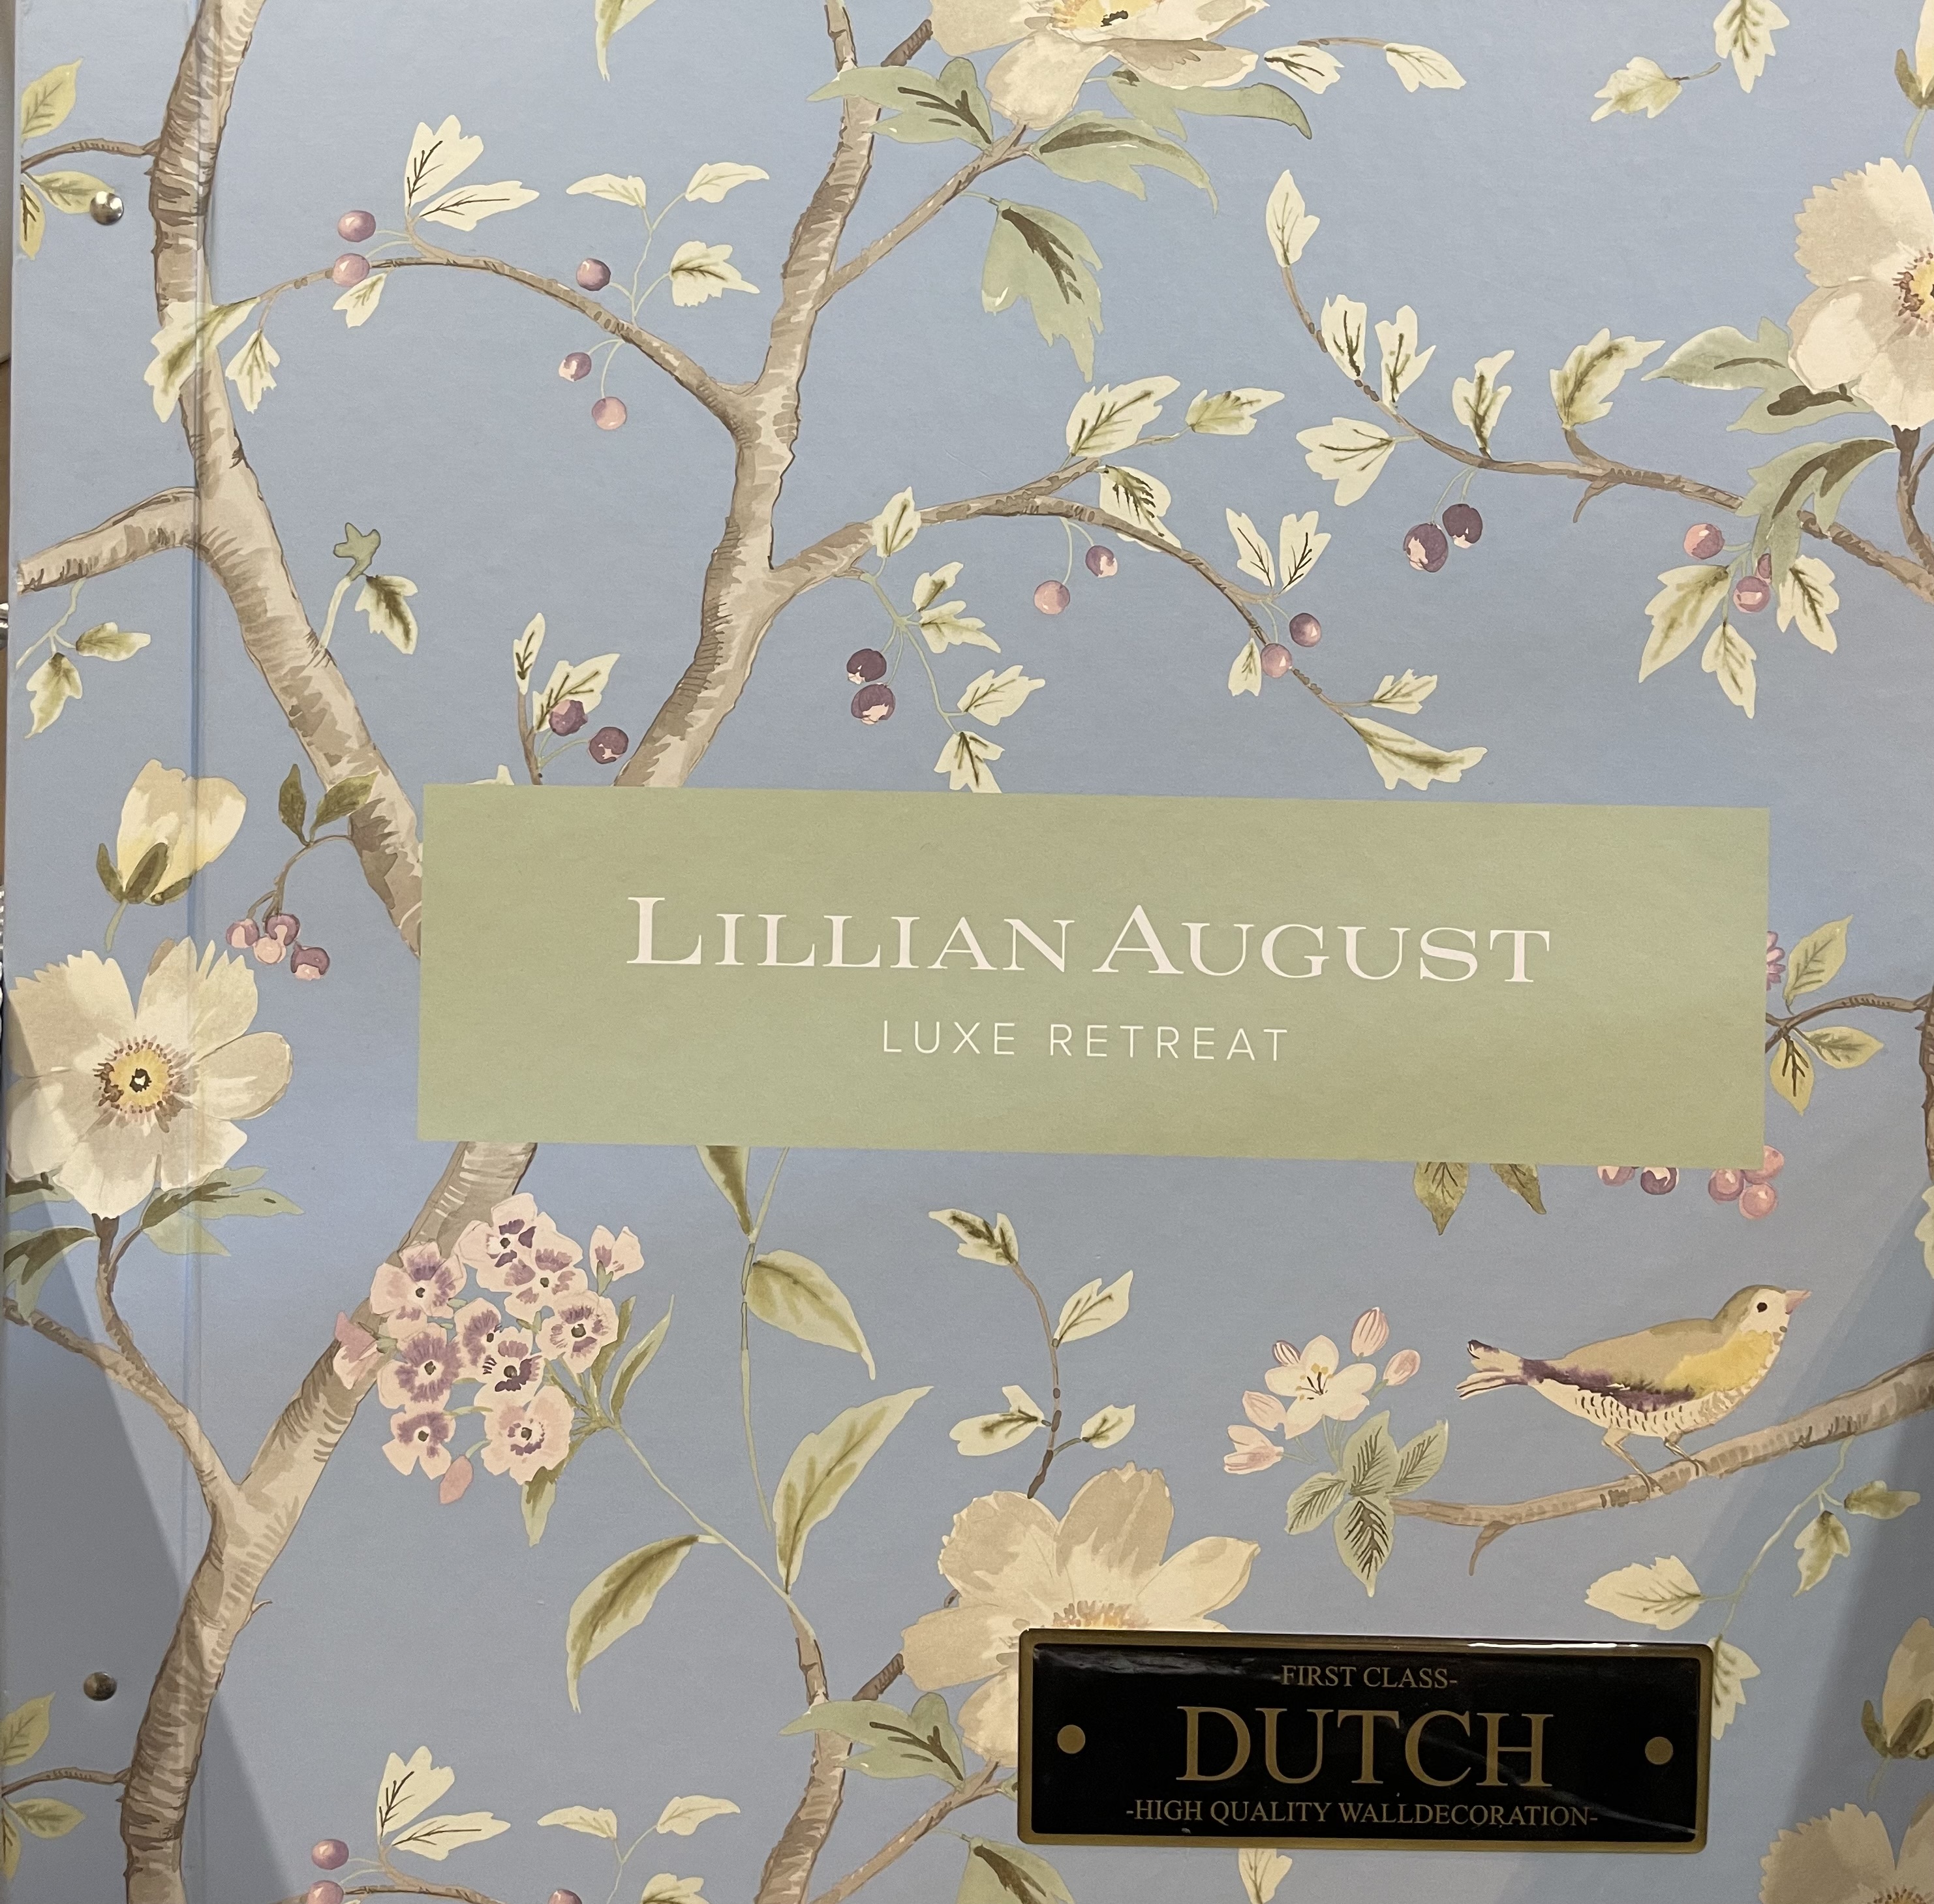 Dutch wallcoverings First Class - Lillian August - Luxe Retreat